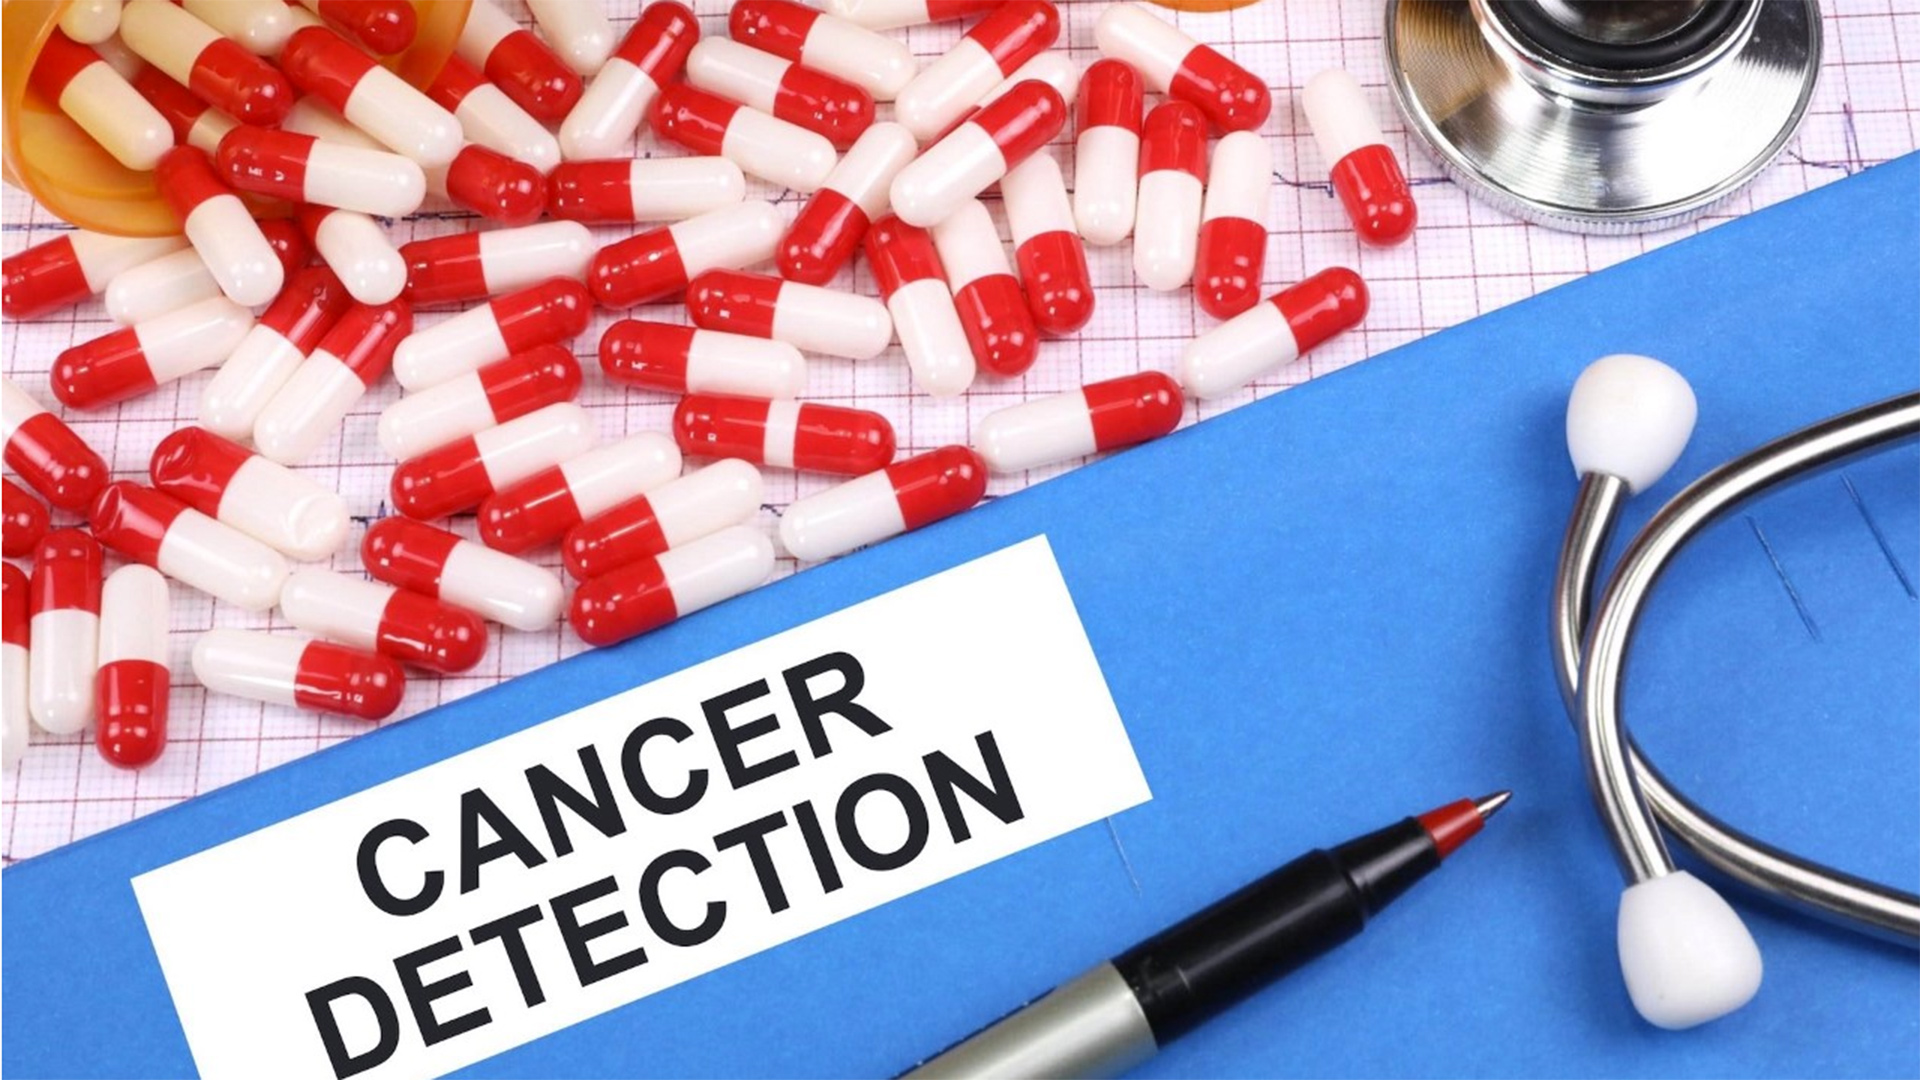 Cancer detection illustration.